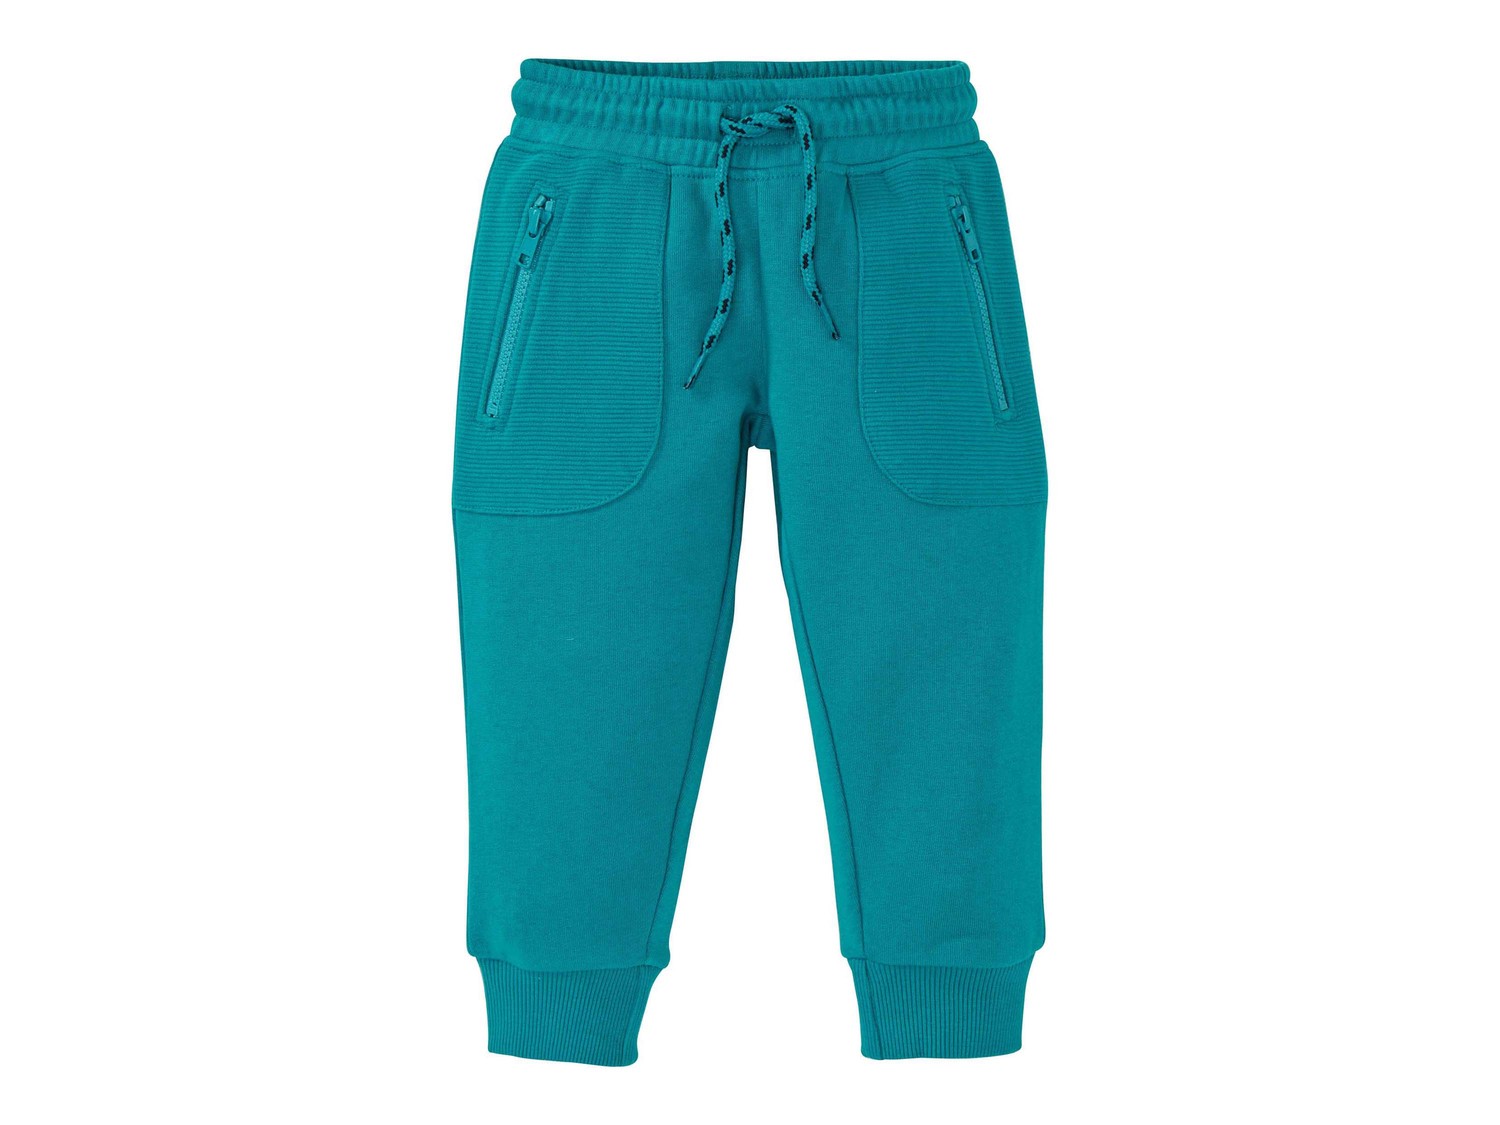 Pantaloni sportivi da bambino Lupilu, prezzo 4.99 &#8364; 
Misure: 1-6 anni
- ...